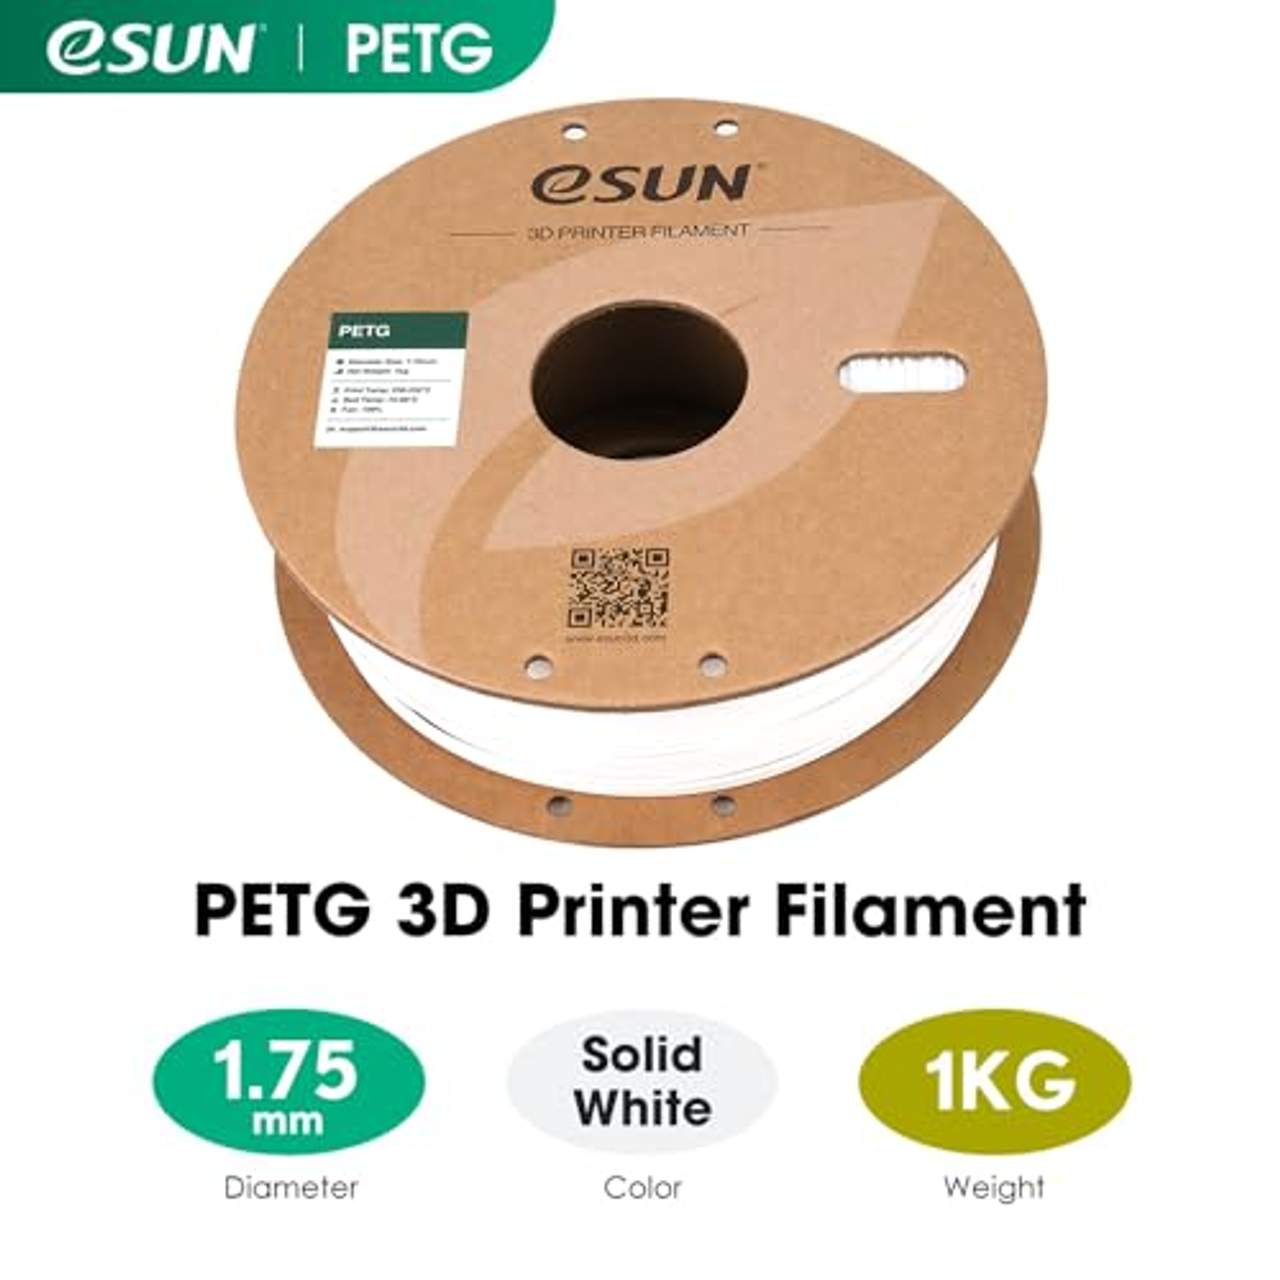 eSUN Petg Filament 1.75mm